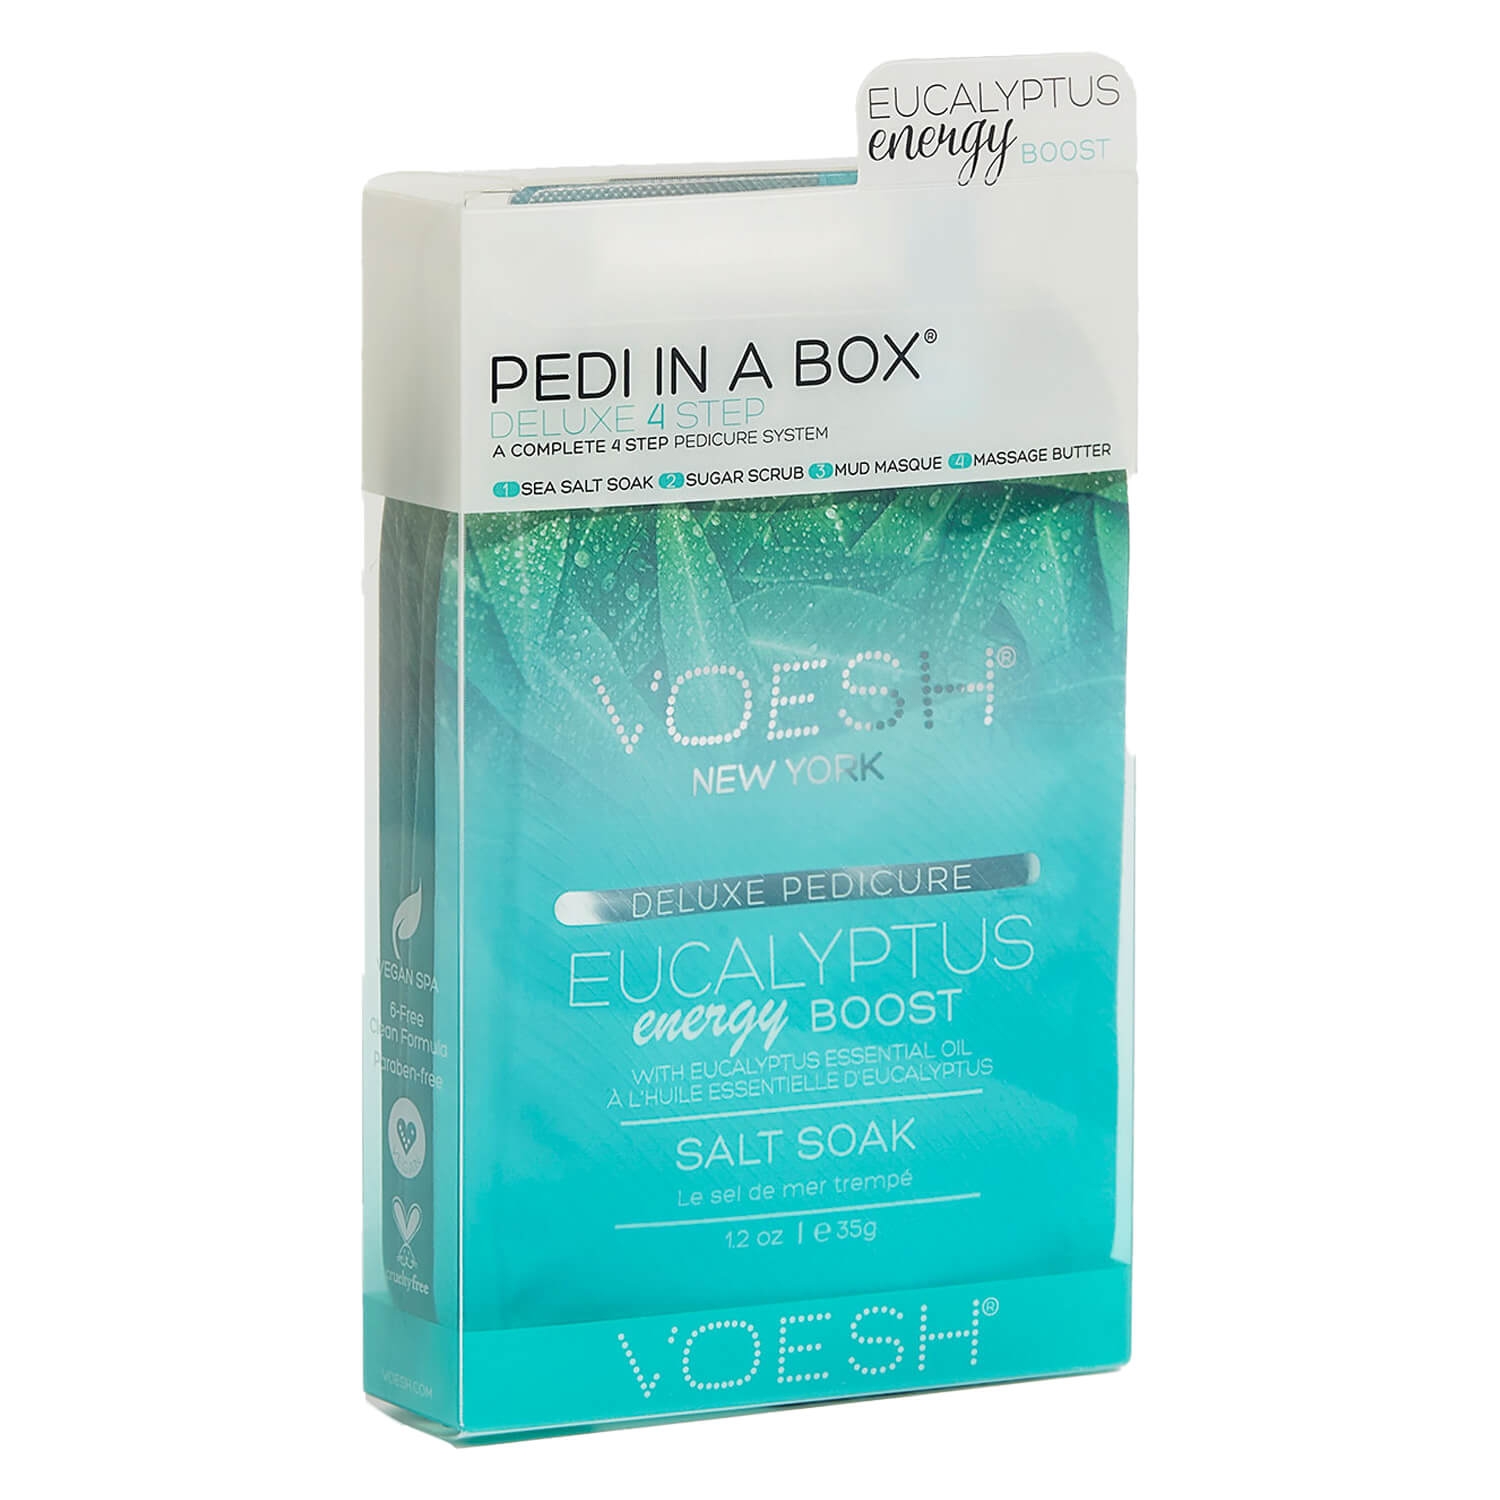 Produktbild von VOESH New York - Pedi In A Box 4 Step Ecualyptus Energy